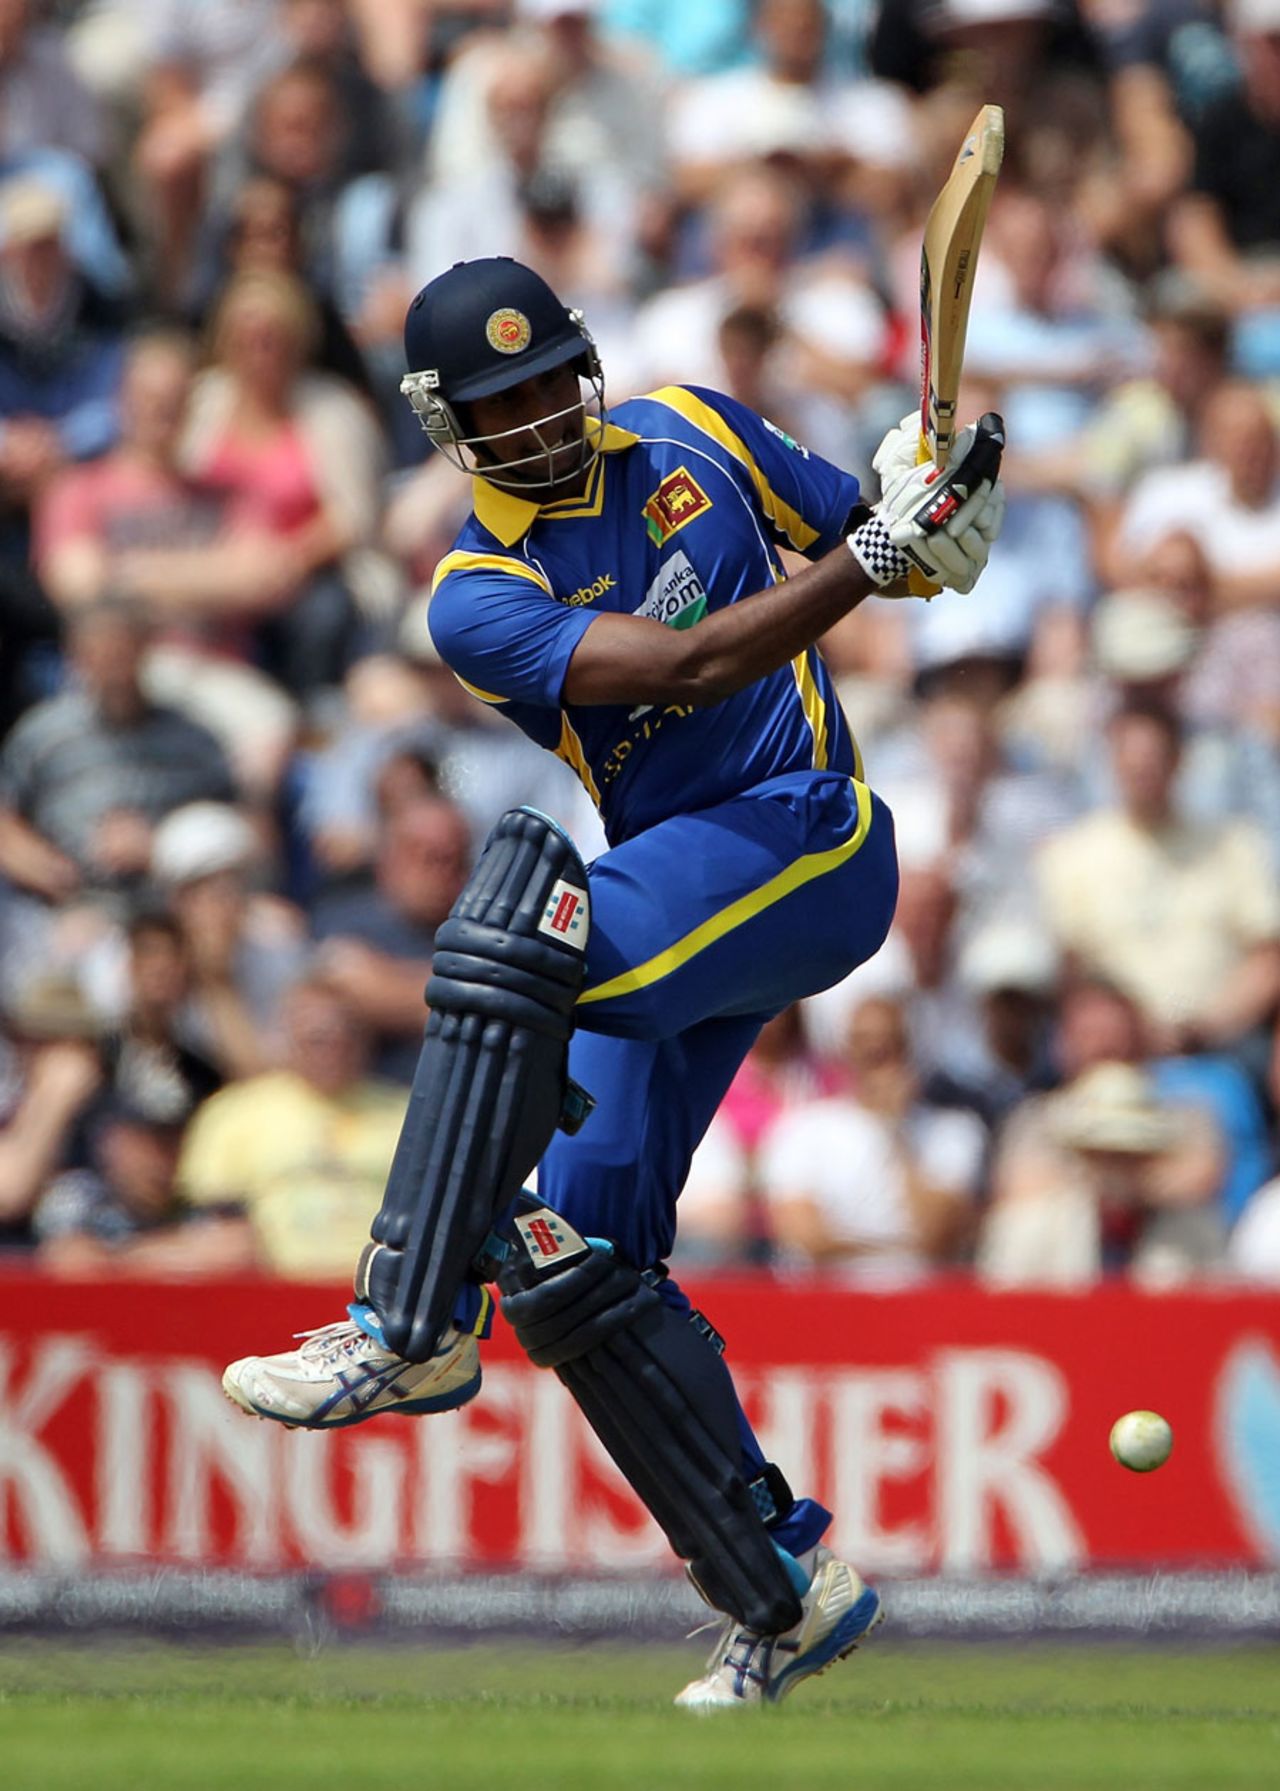 Angelo Mathews lifted Sri Lanka's tempo with 41 from 27 balls, England v Sri Lanka, 2nd ODI, Headingley, July 1 2011